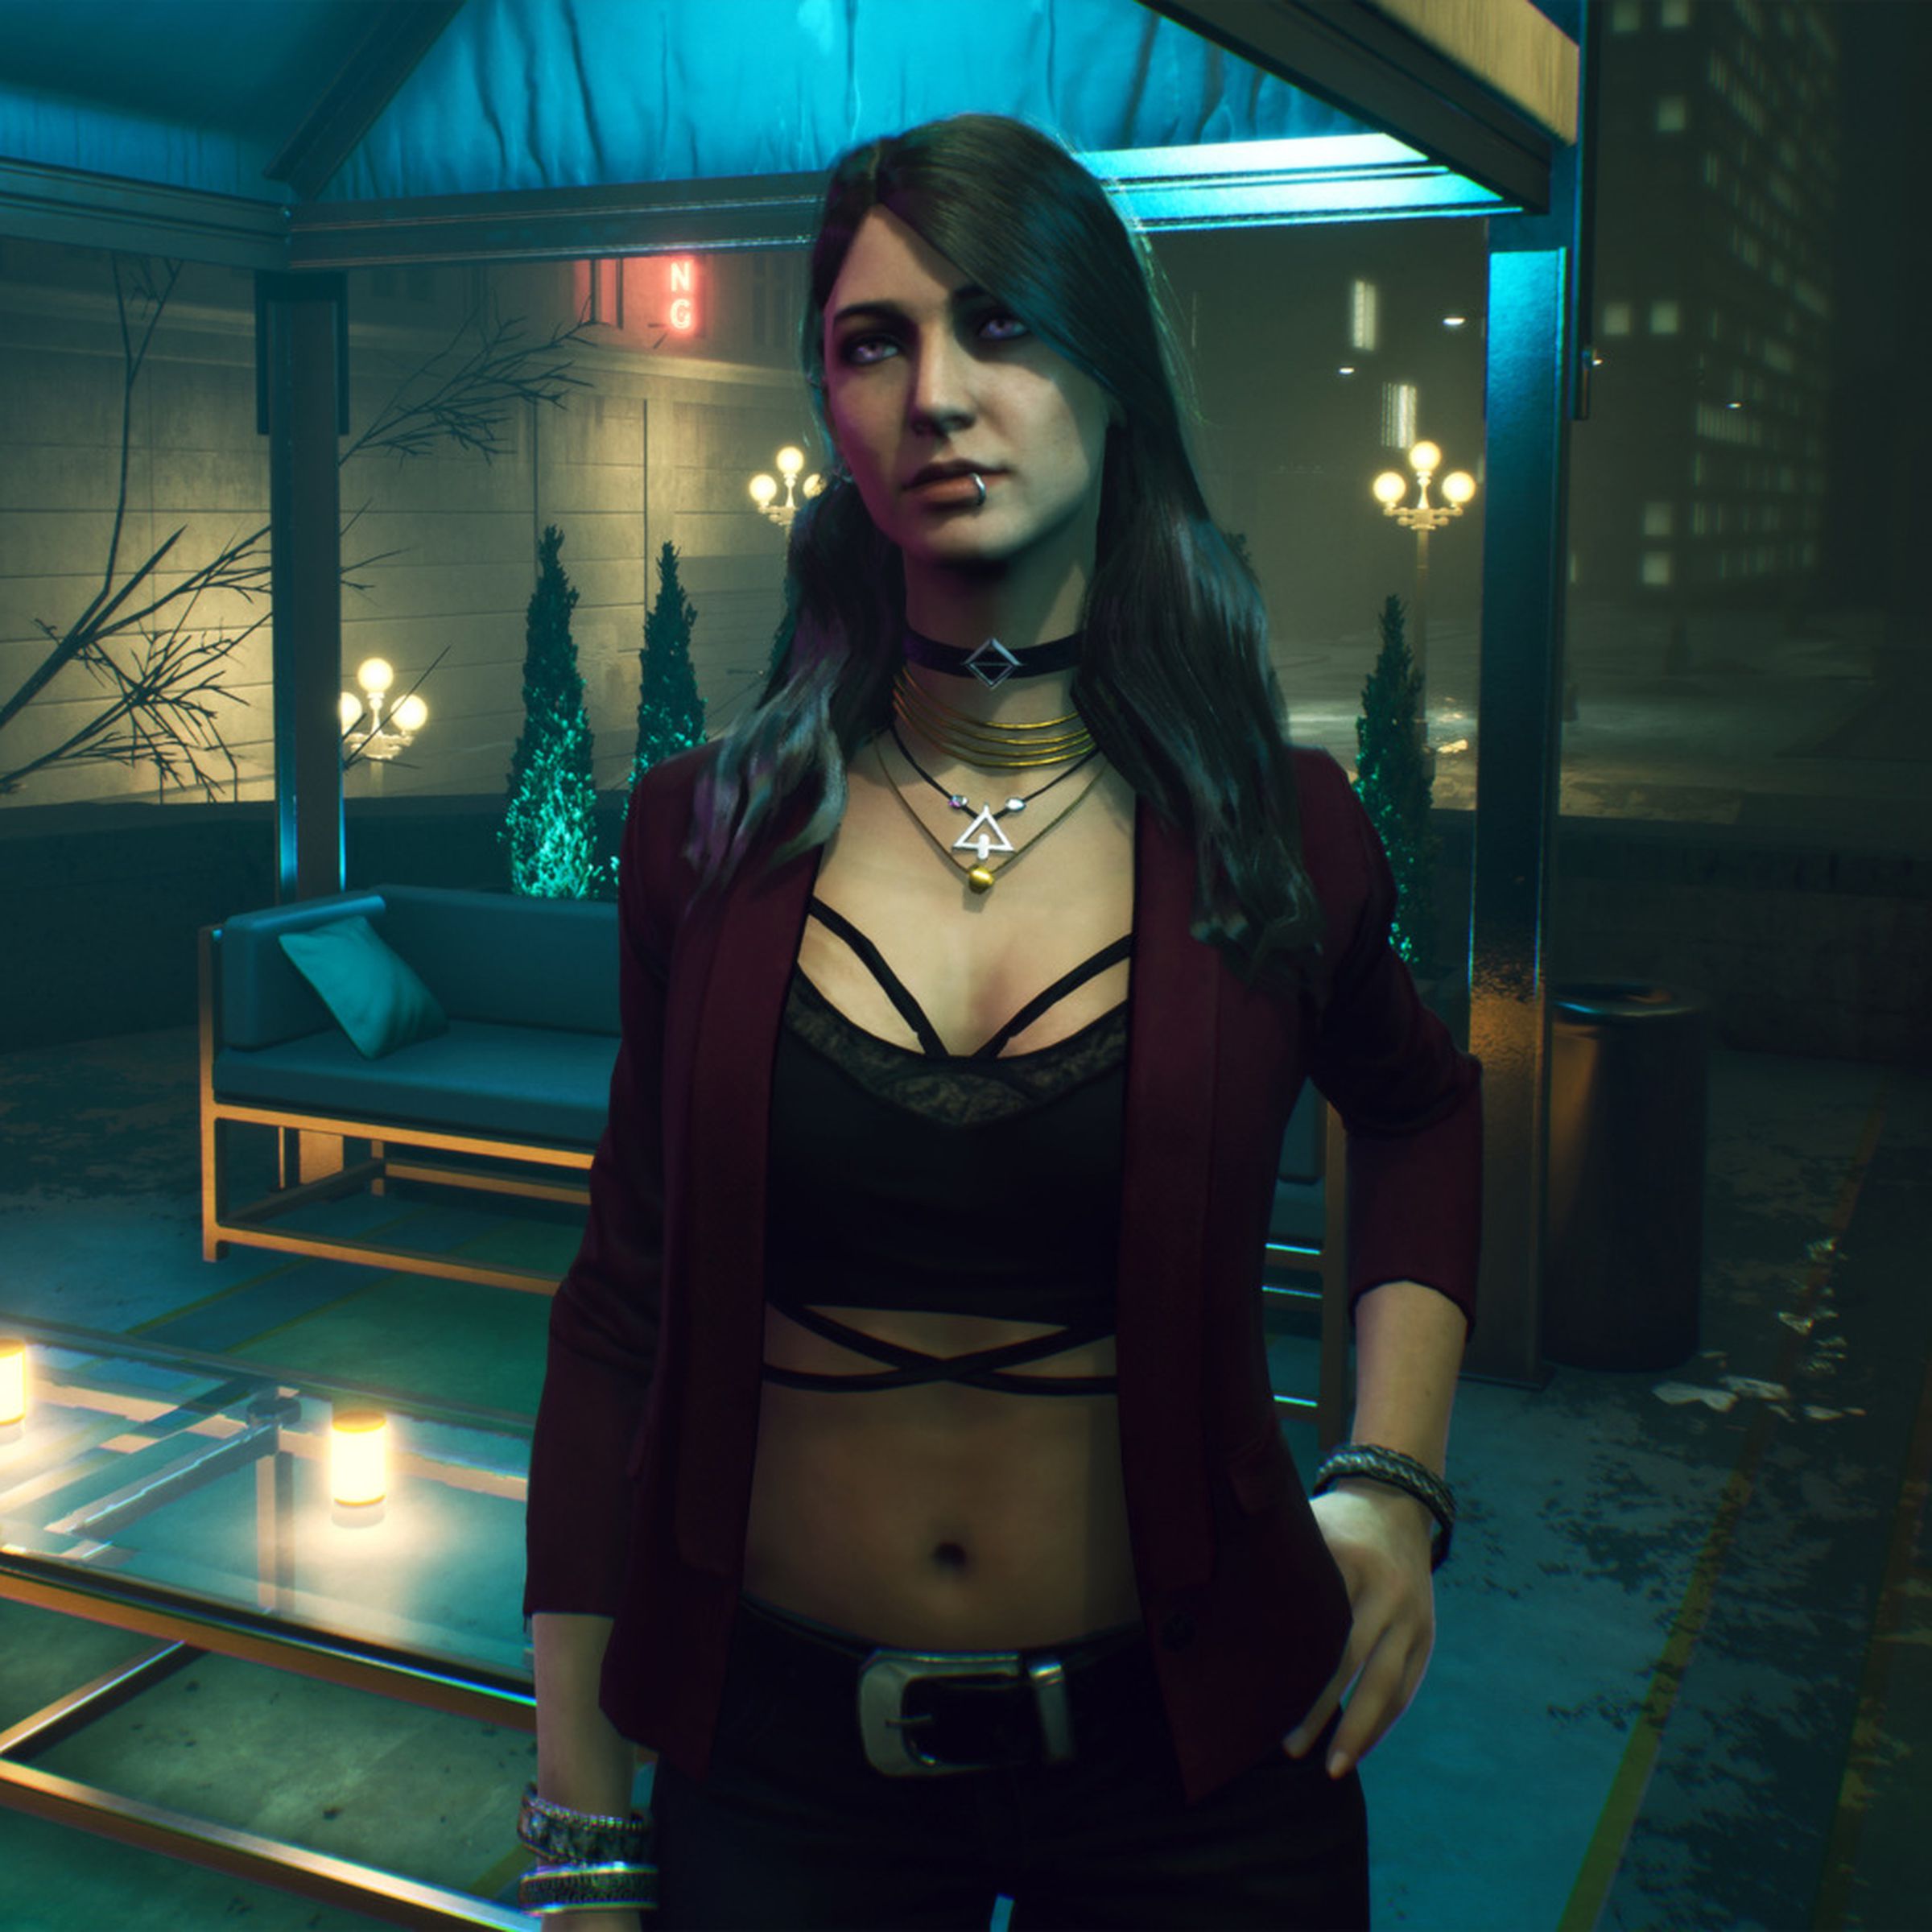 Vampire: The Masquerade - Bloodlines 2 screenshot, E3 2019